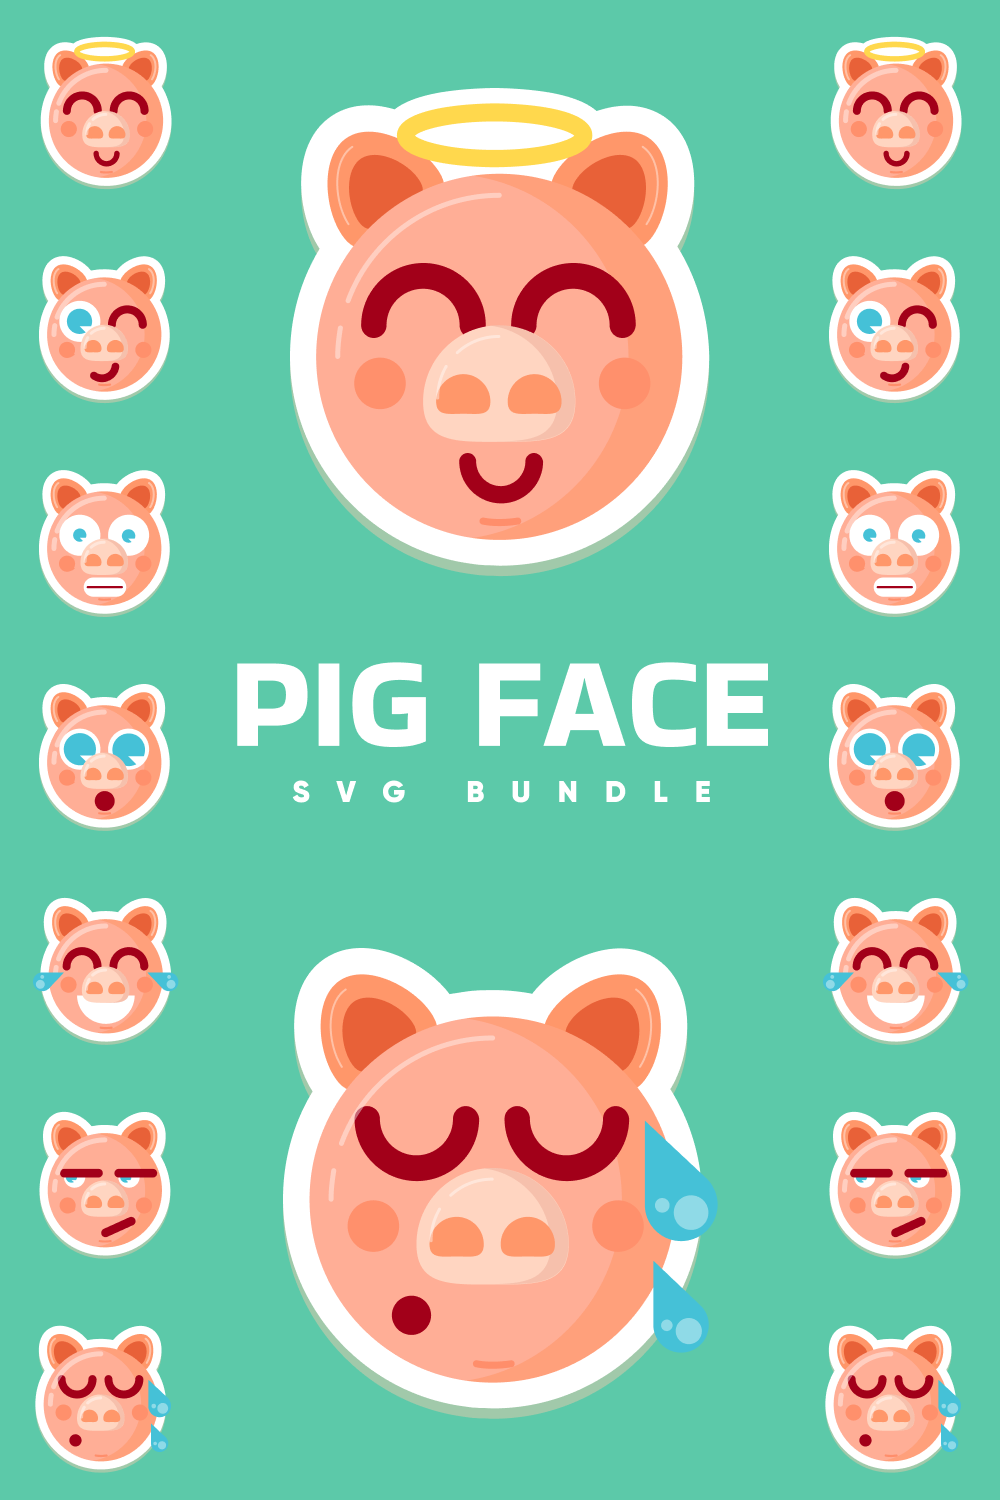 Pig face v1 SVG bundle.